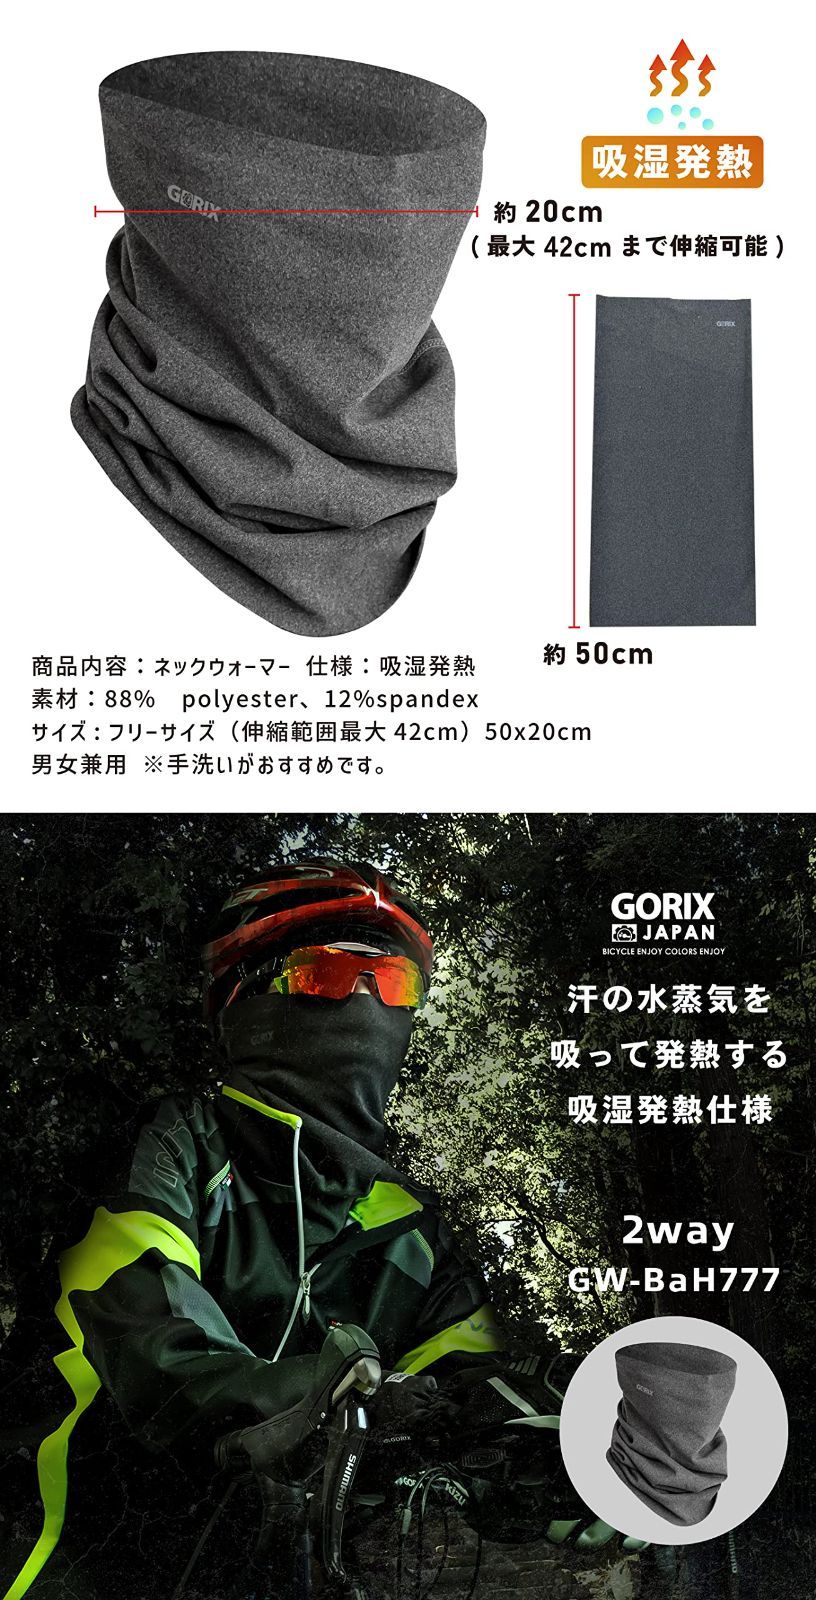 GORIX(ゴリックス) ネックウォーマー フェイスカバー 冬 自転車 ロードバイク 暖かい 裏起毛 防寒 軽量 2way 高機能 首冷え